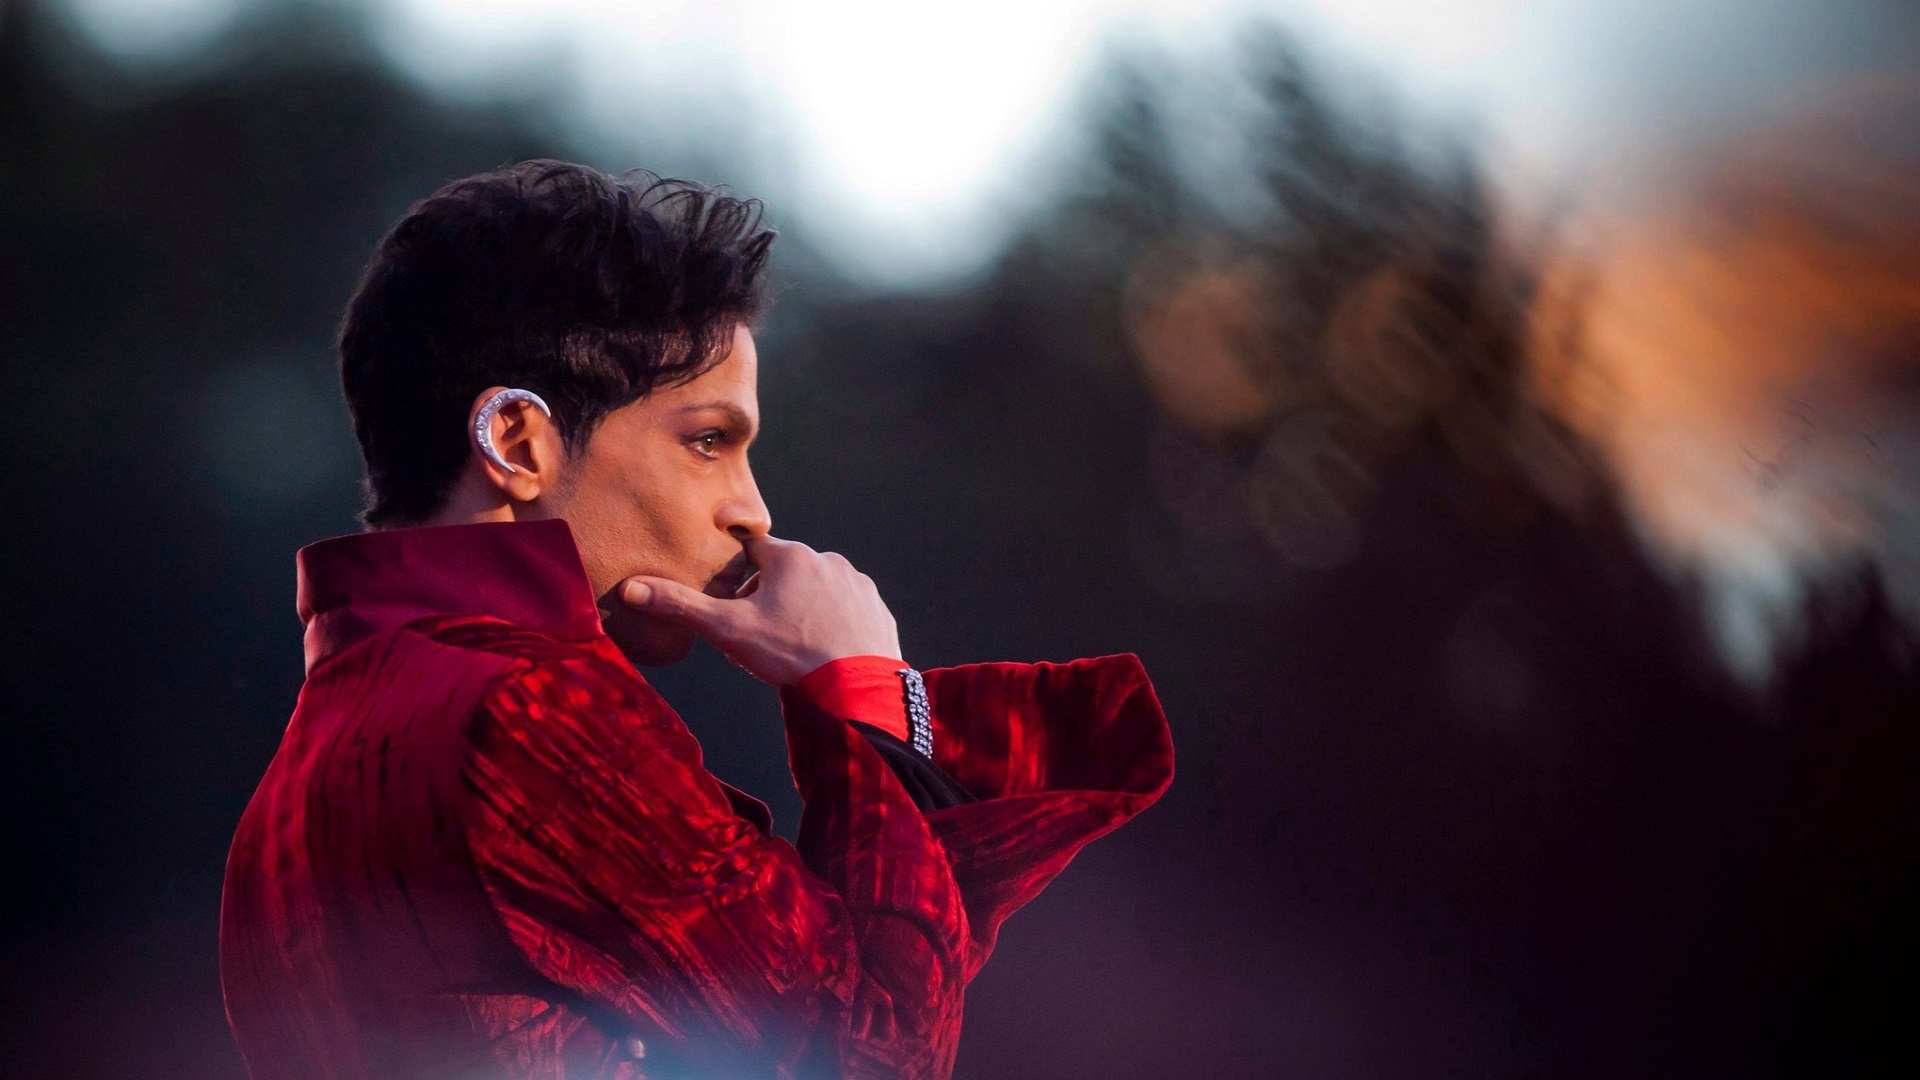 En conmemoración al nacimiento de Prince lanzan nuevo videoclip de “Baltimore”